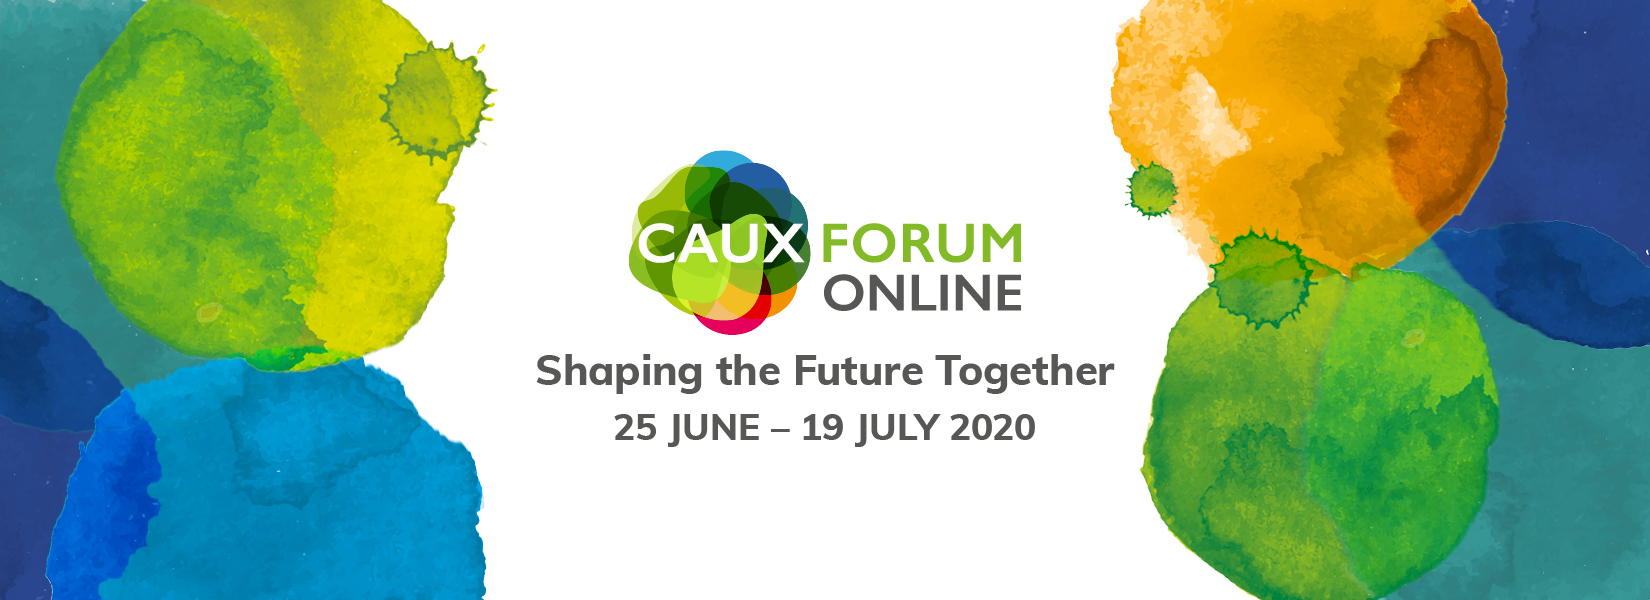 Caux Forum Online 2020 general slider